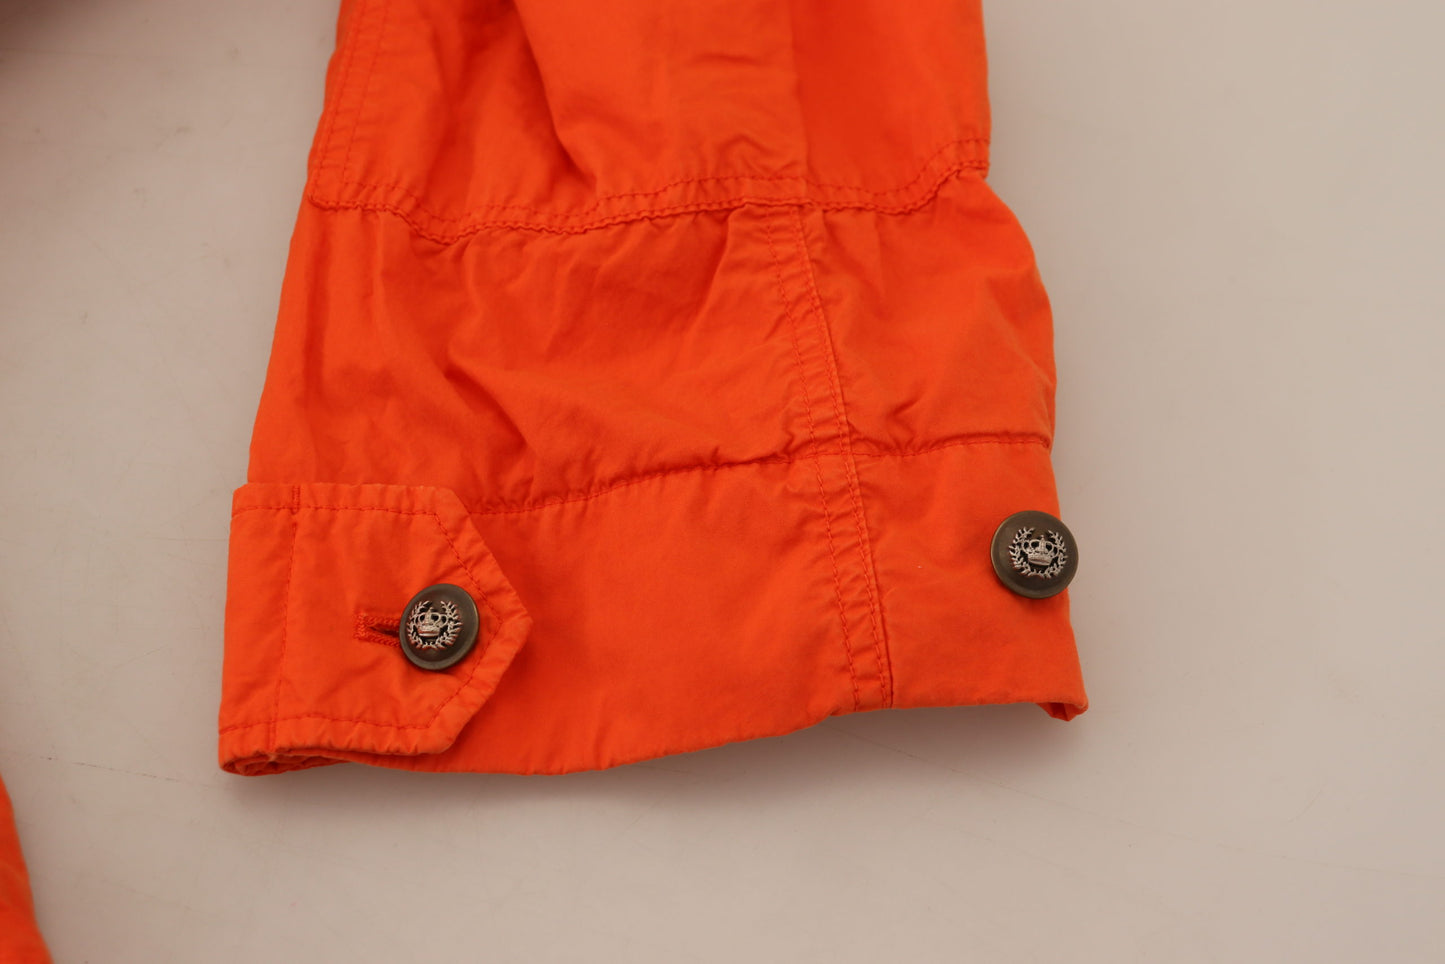 Elegant Orange Cotton Blend Jacket